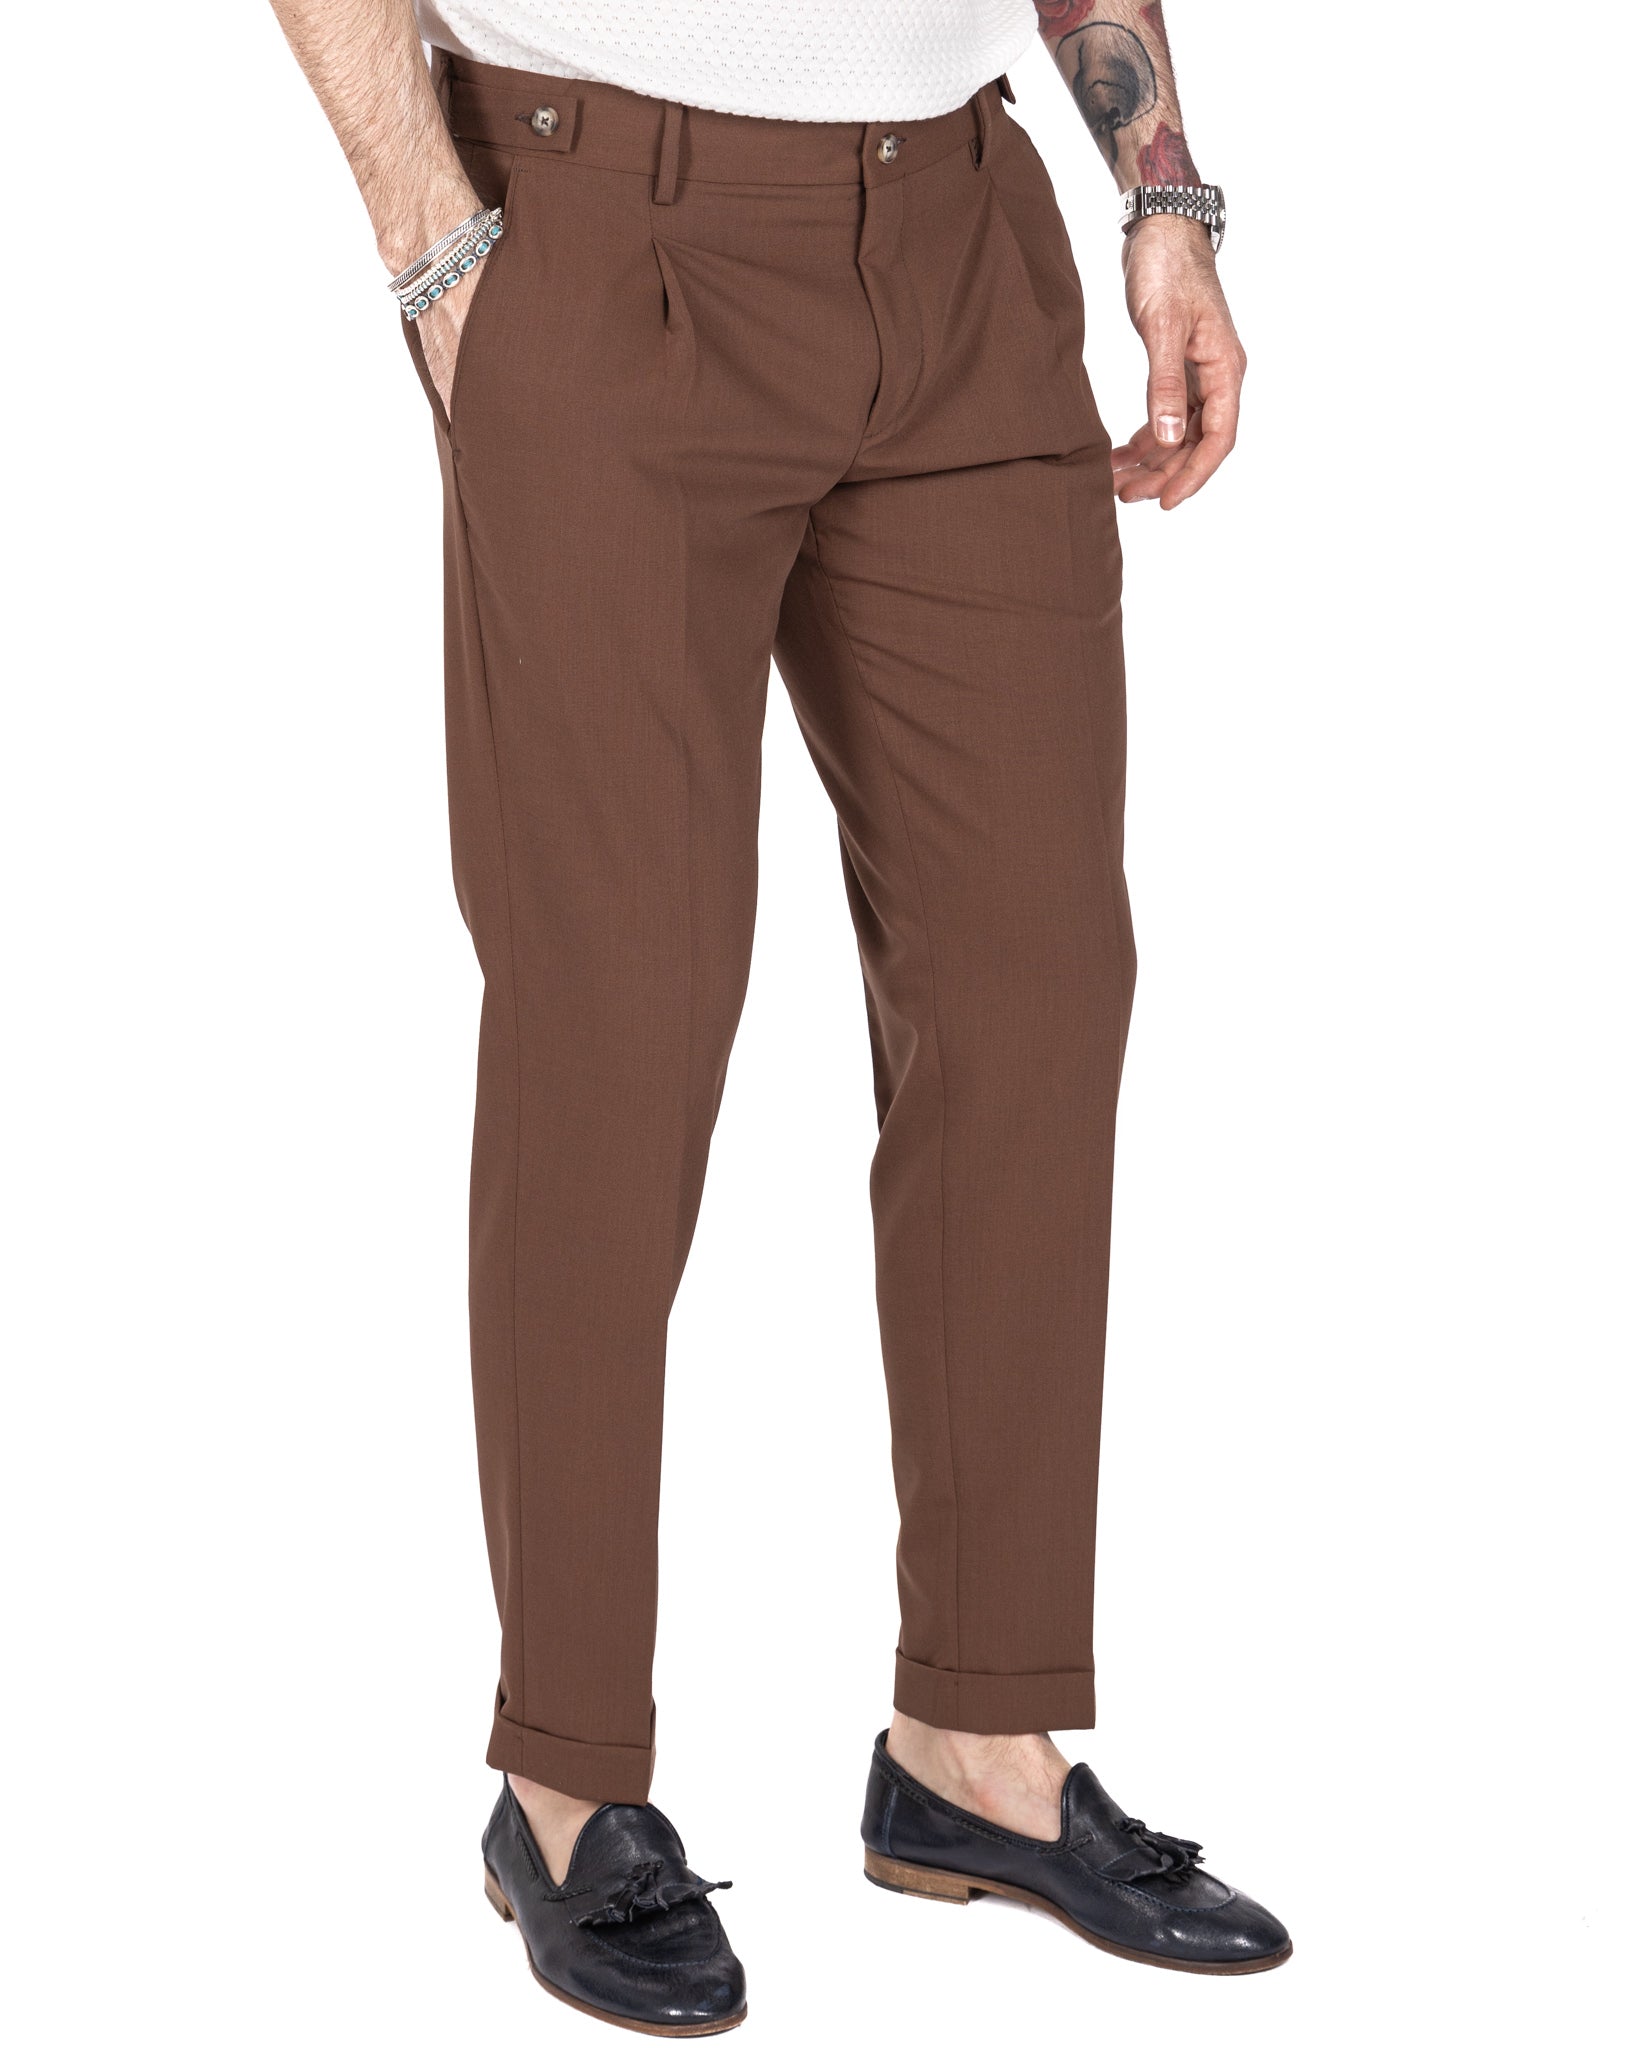 Milano - pantalon basique marron foncé